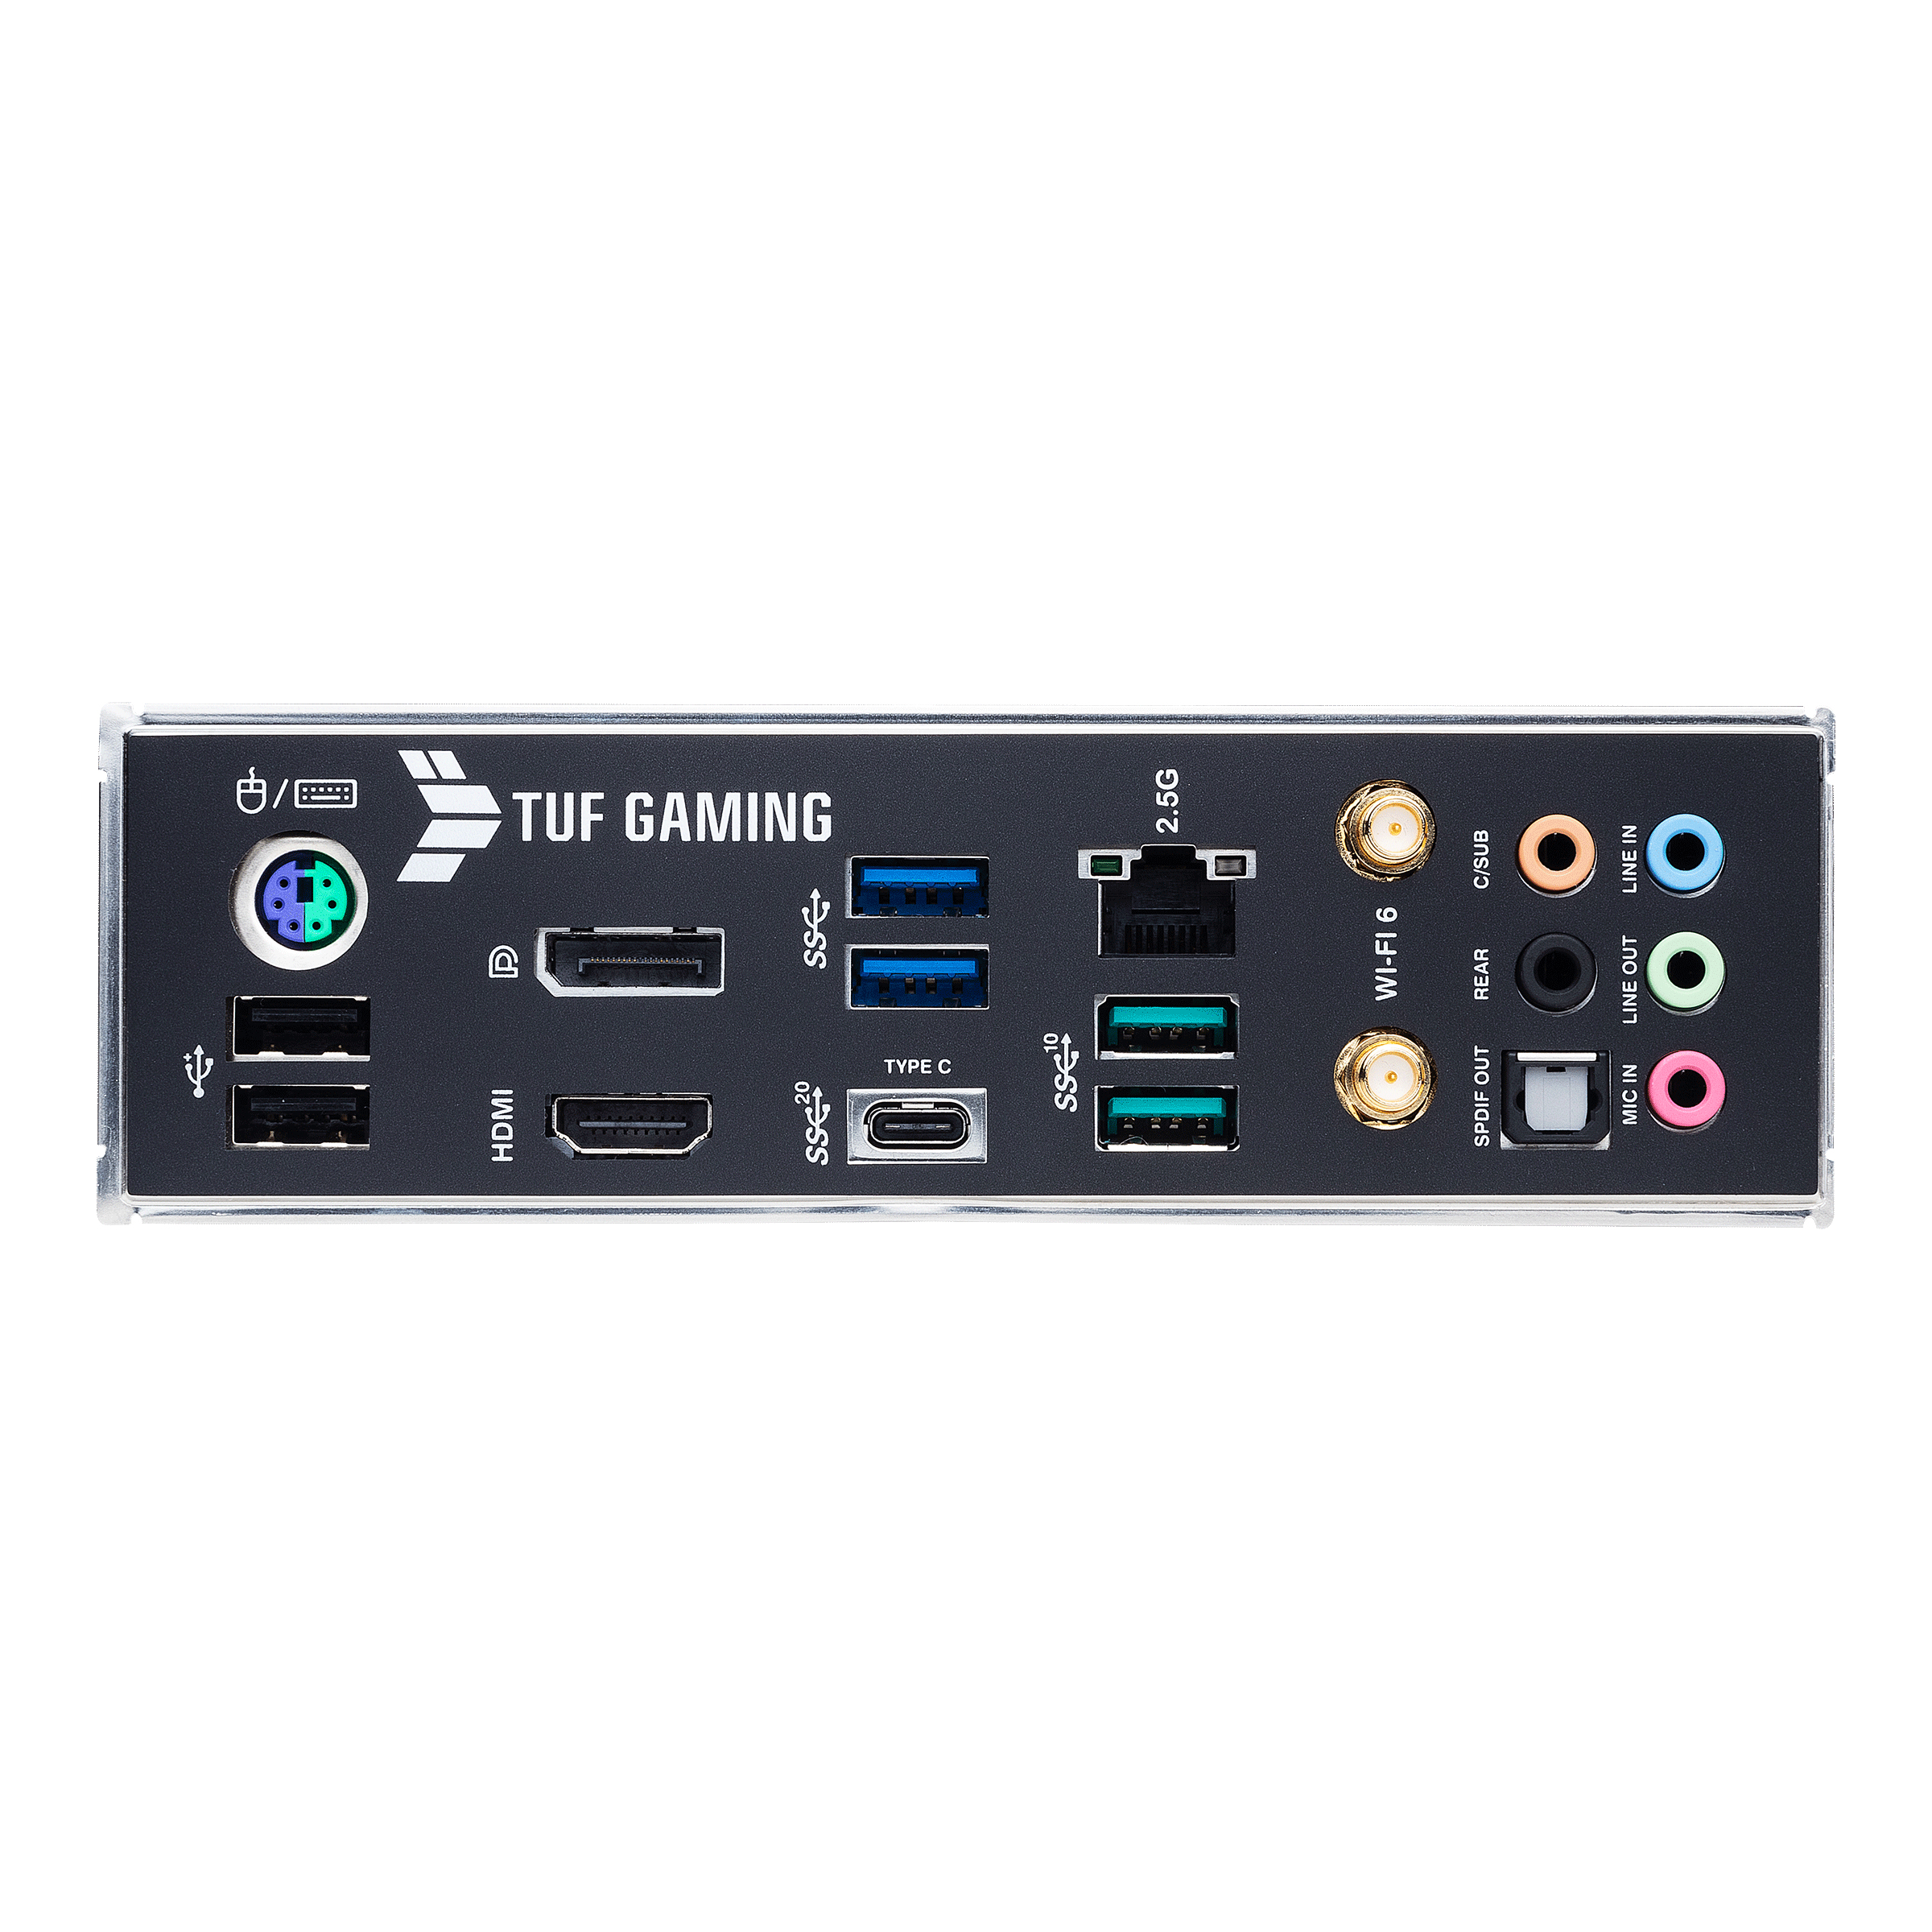 ASUS TUF GAMING Z590-PLUS WIFI - Motherboard - ATX - LGA1200-Sockel - Z590 - USB-C Gen1, USB 3.2 Gen 1, USB 3.2 Gen 2, USB-C Gen 2x2 - 2.5 Gigabit LAN, Wi-Fi, Bluetooth - Onboard-Grafik (CPU erforderlich)